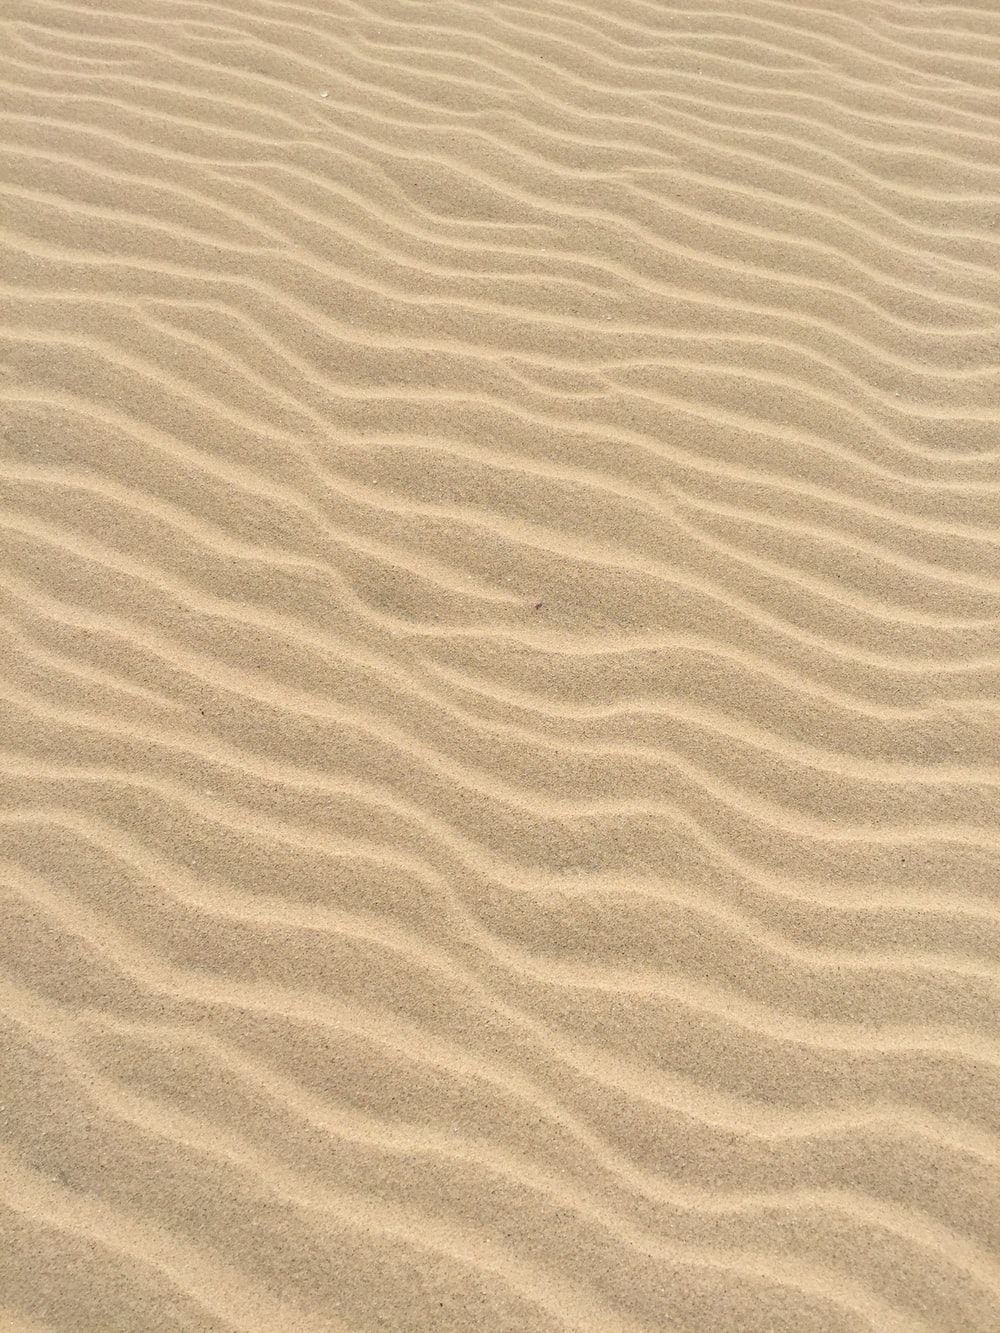  Sand Hintergrundbild 1000x1333. Sand Texture Wallpaper Free Sand Texture Background